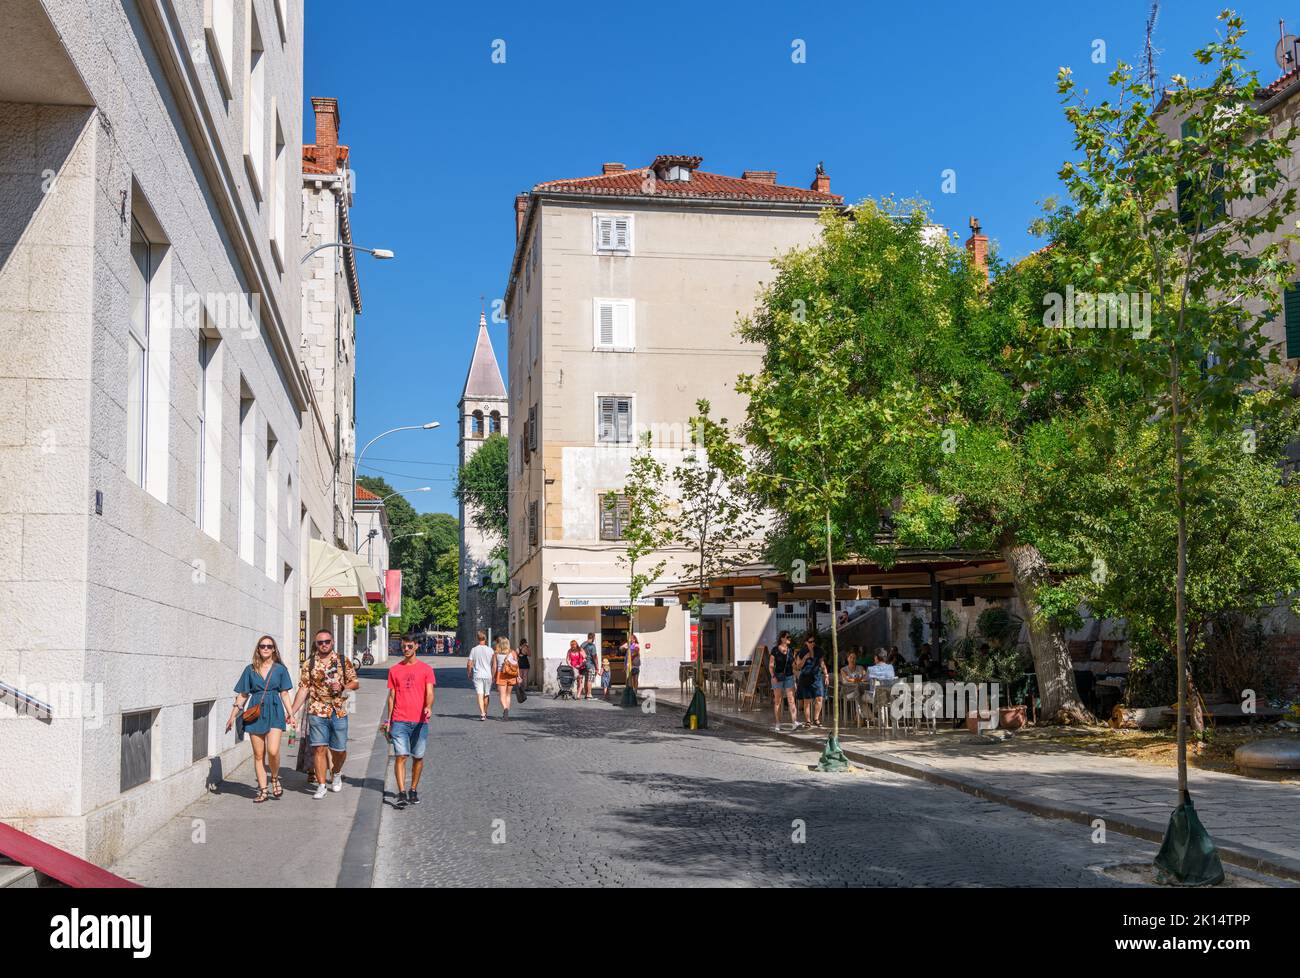 Ulica Kralja Tomislava, als Straße in der Altstadt von Split, Kroatien Stockfoto